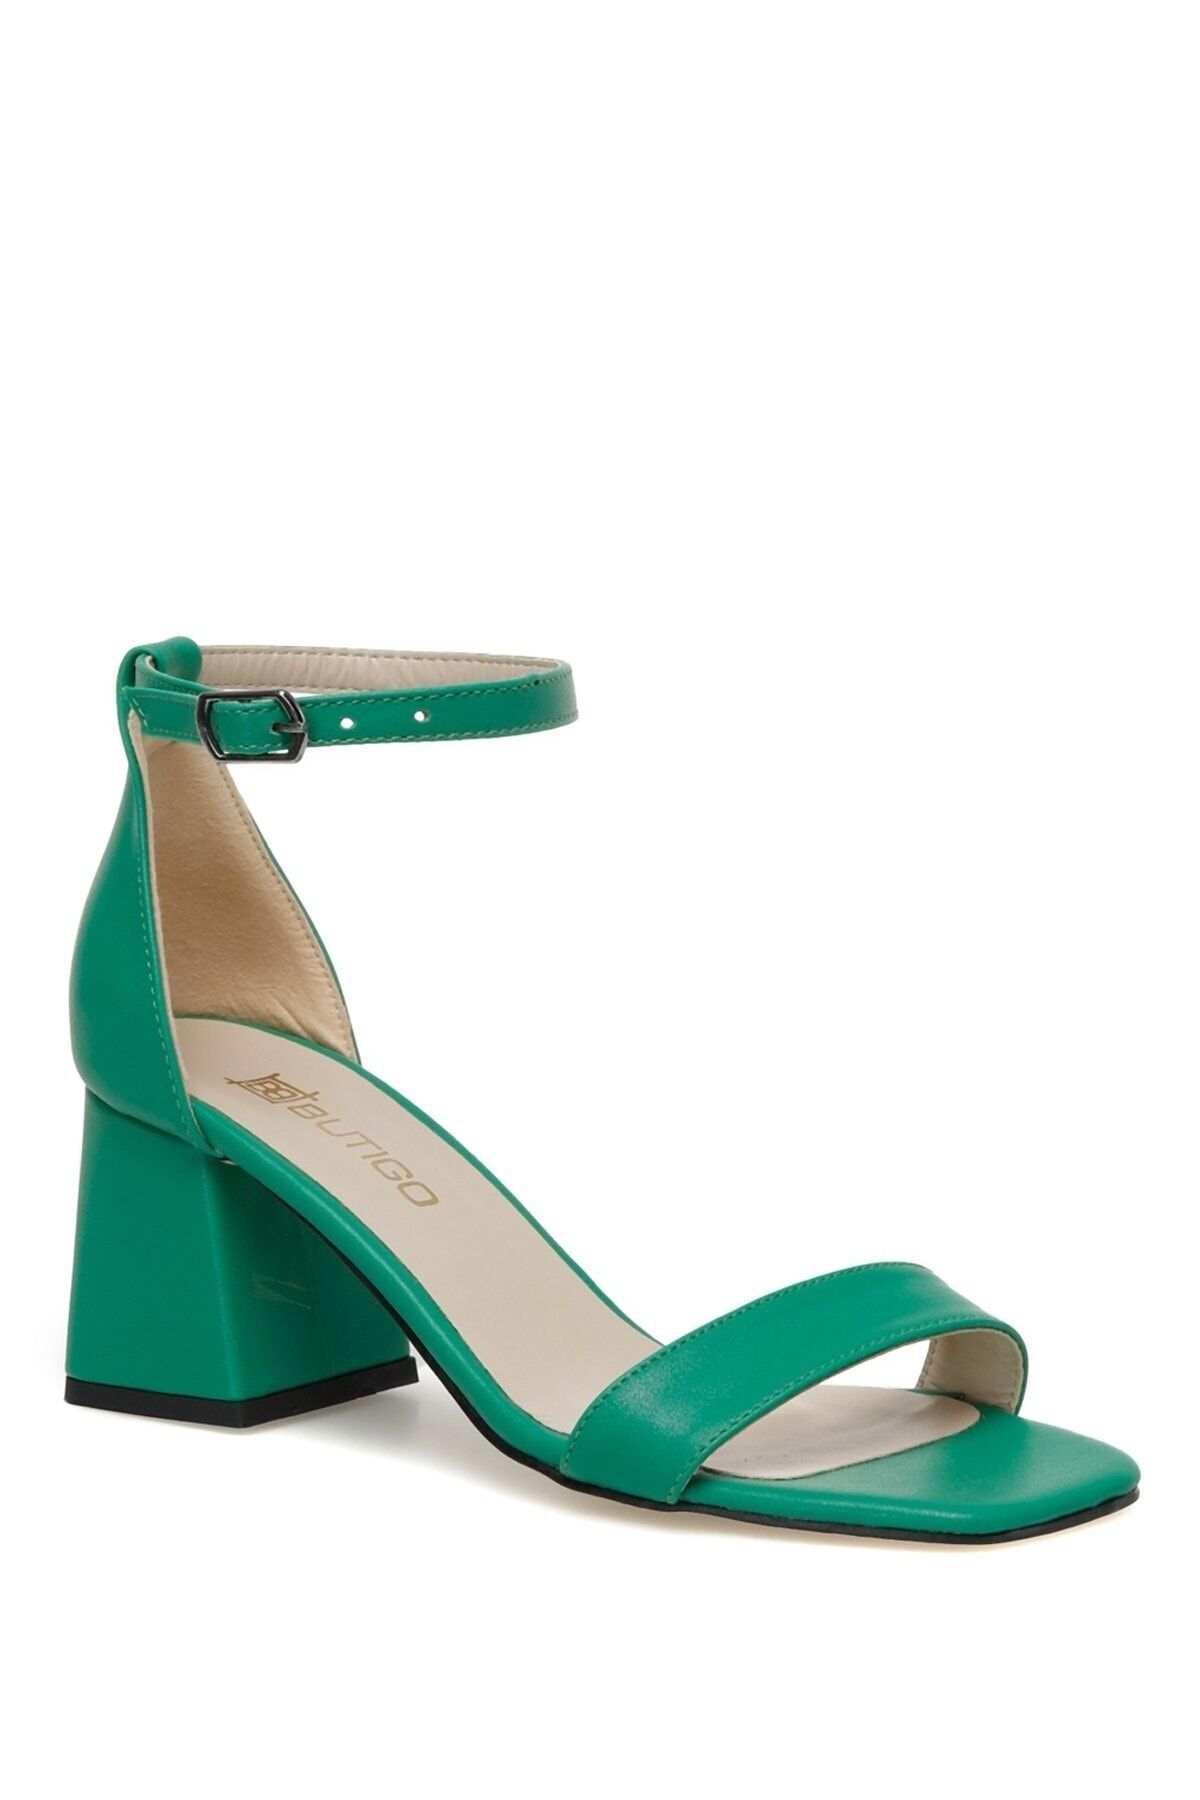 Butigo Yeşil Kadın Topuklu Sandalet